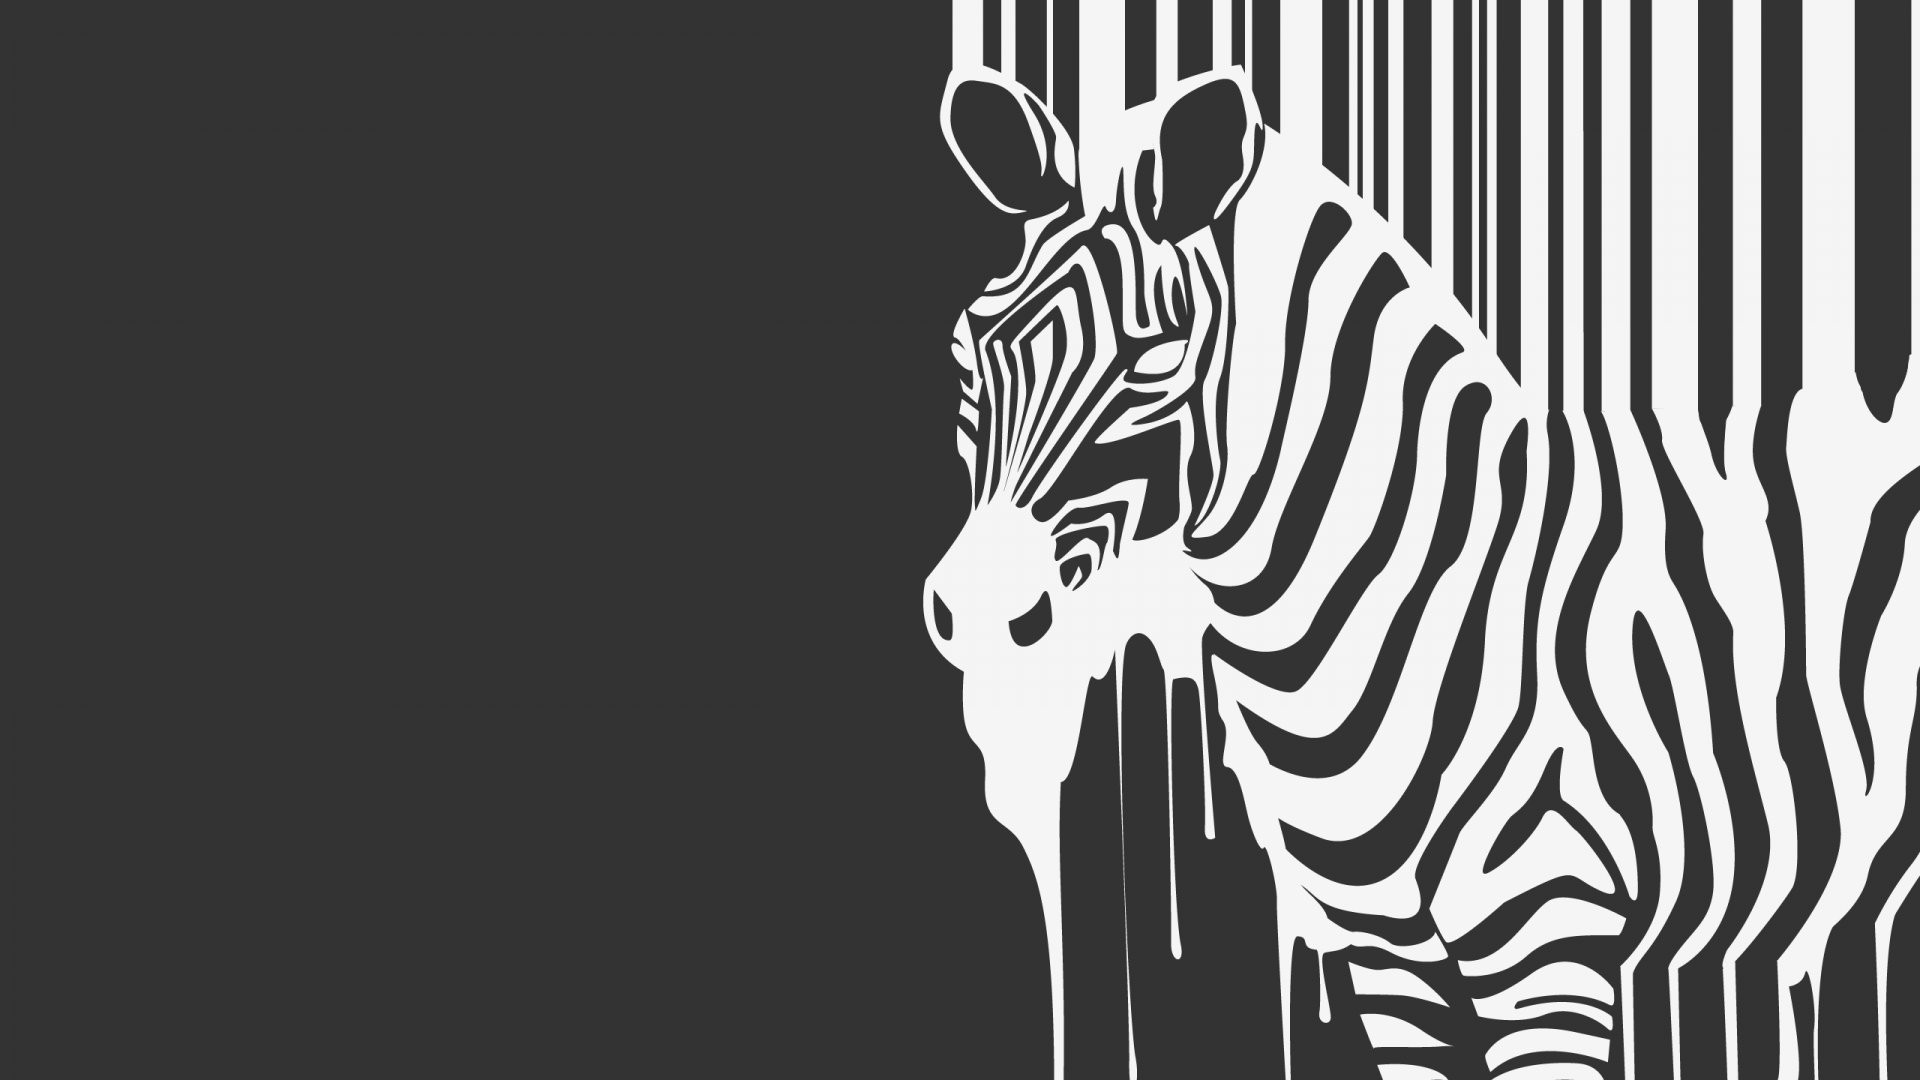 General 1920x1080 zebras animals monochrome artwork mammals simple background gray background